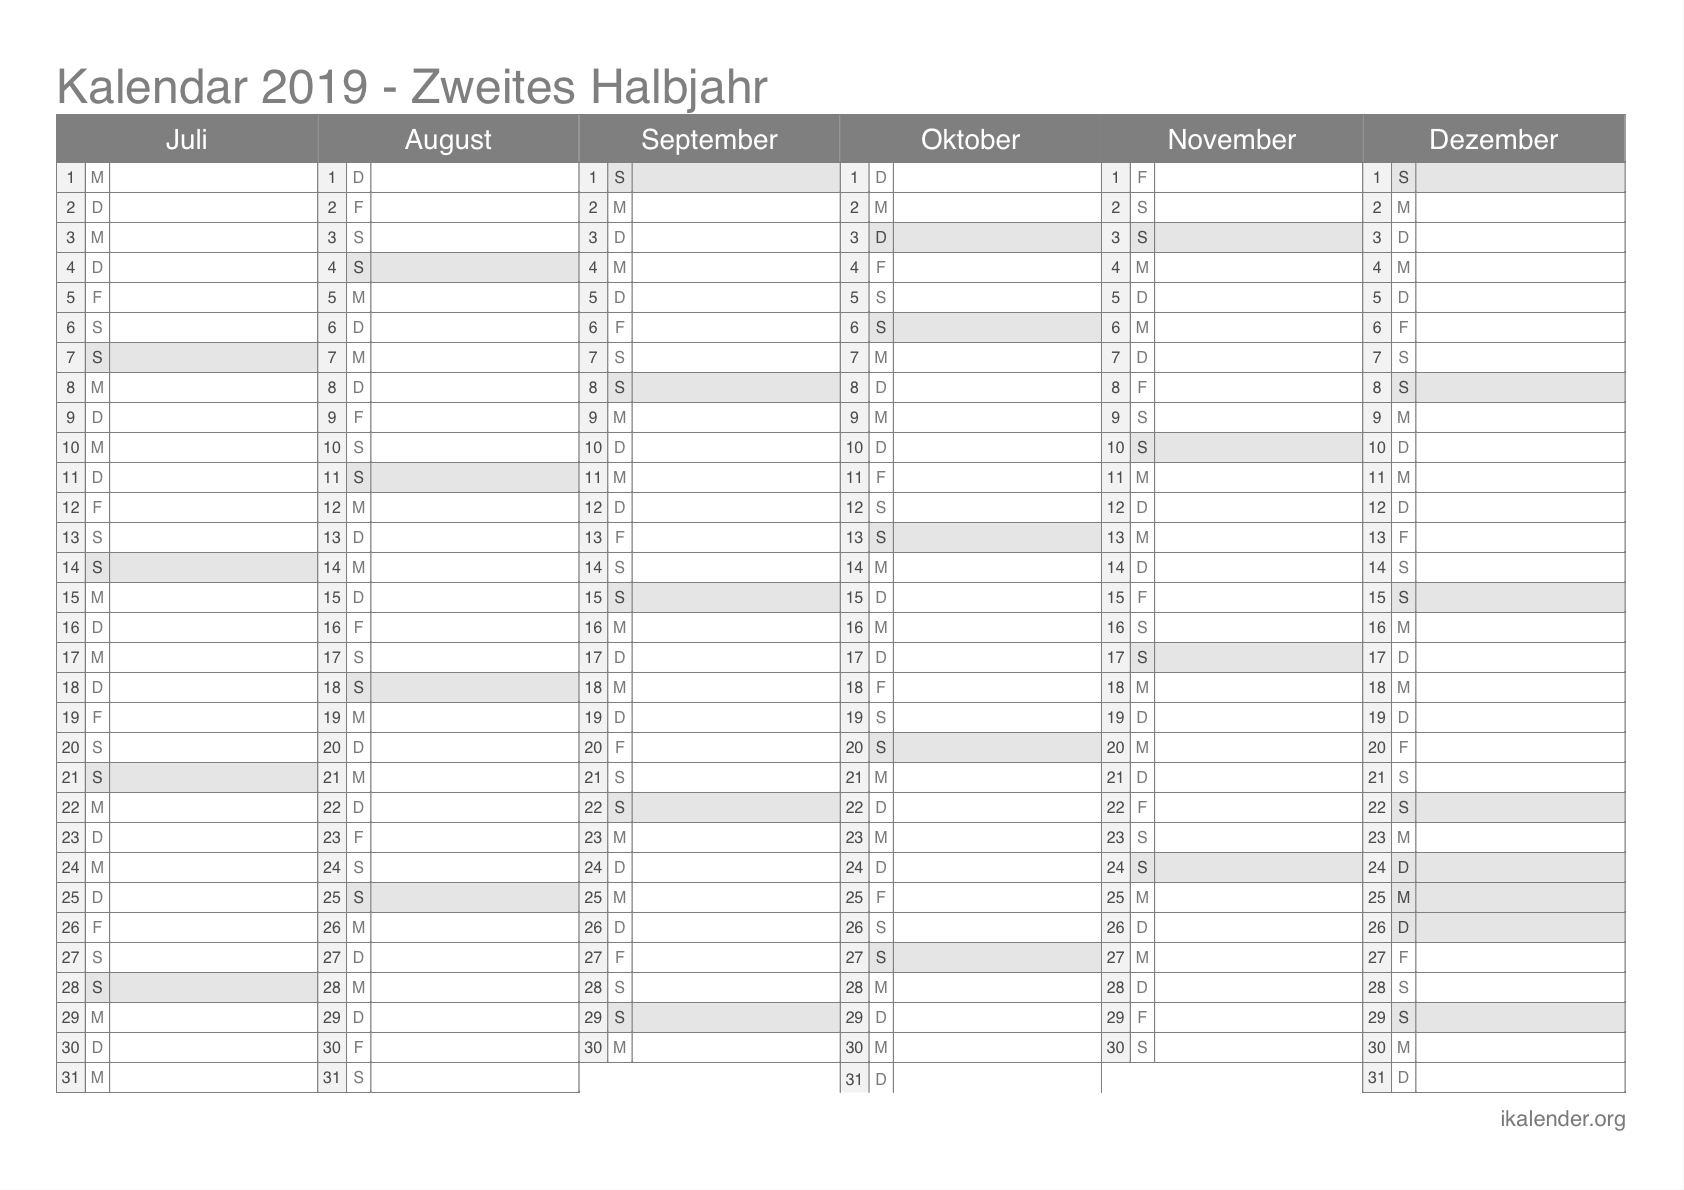 Kalender 2019 Zum Ausdrucken - Ikalender in Monatskalender Zum Ausdrucken Kostenlos